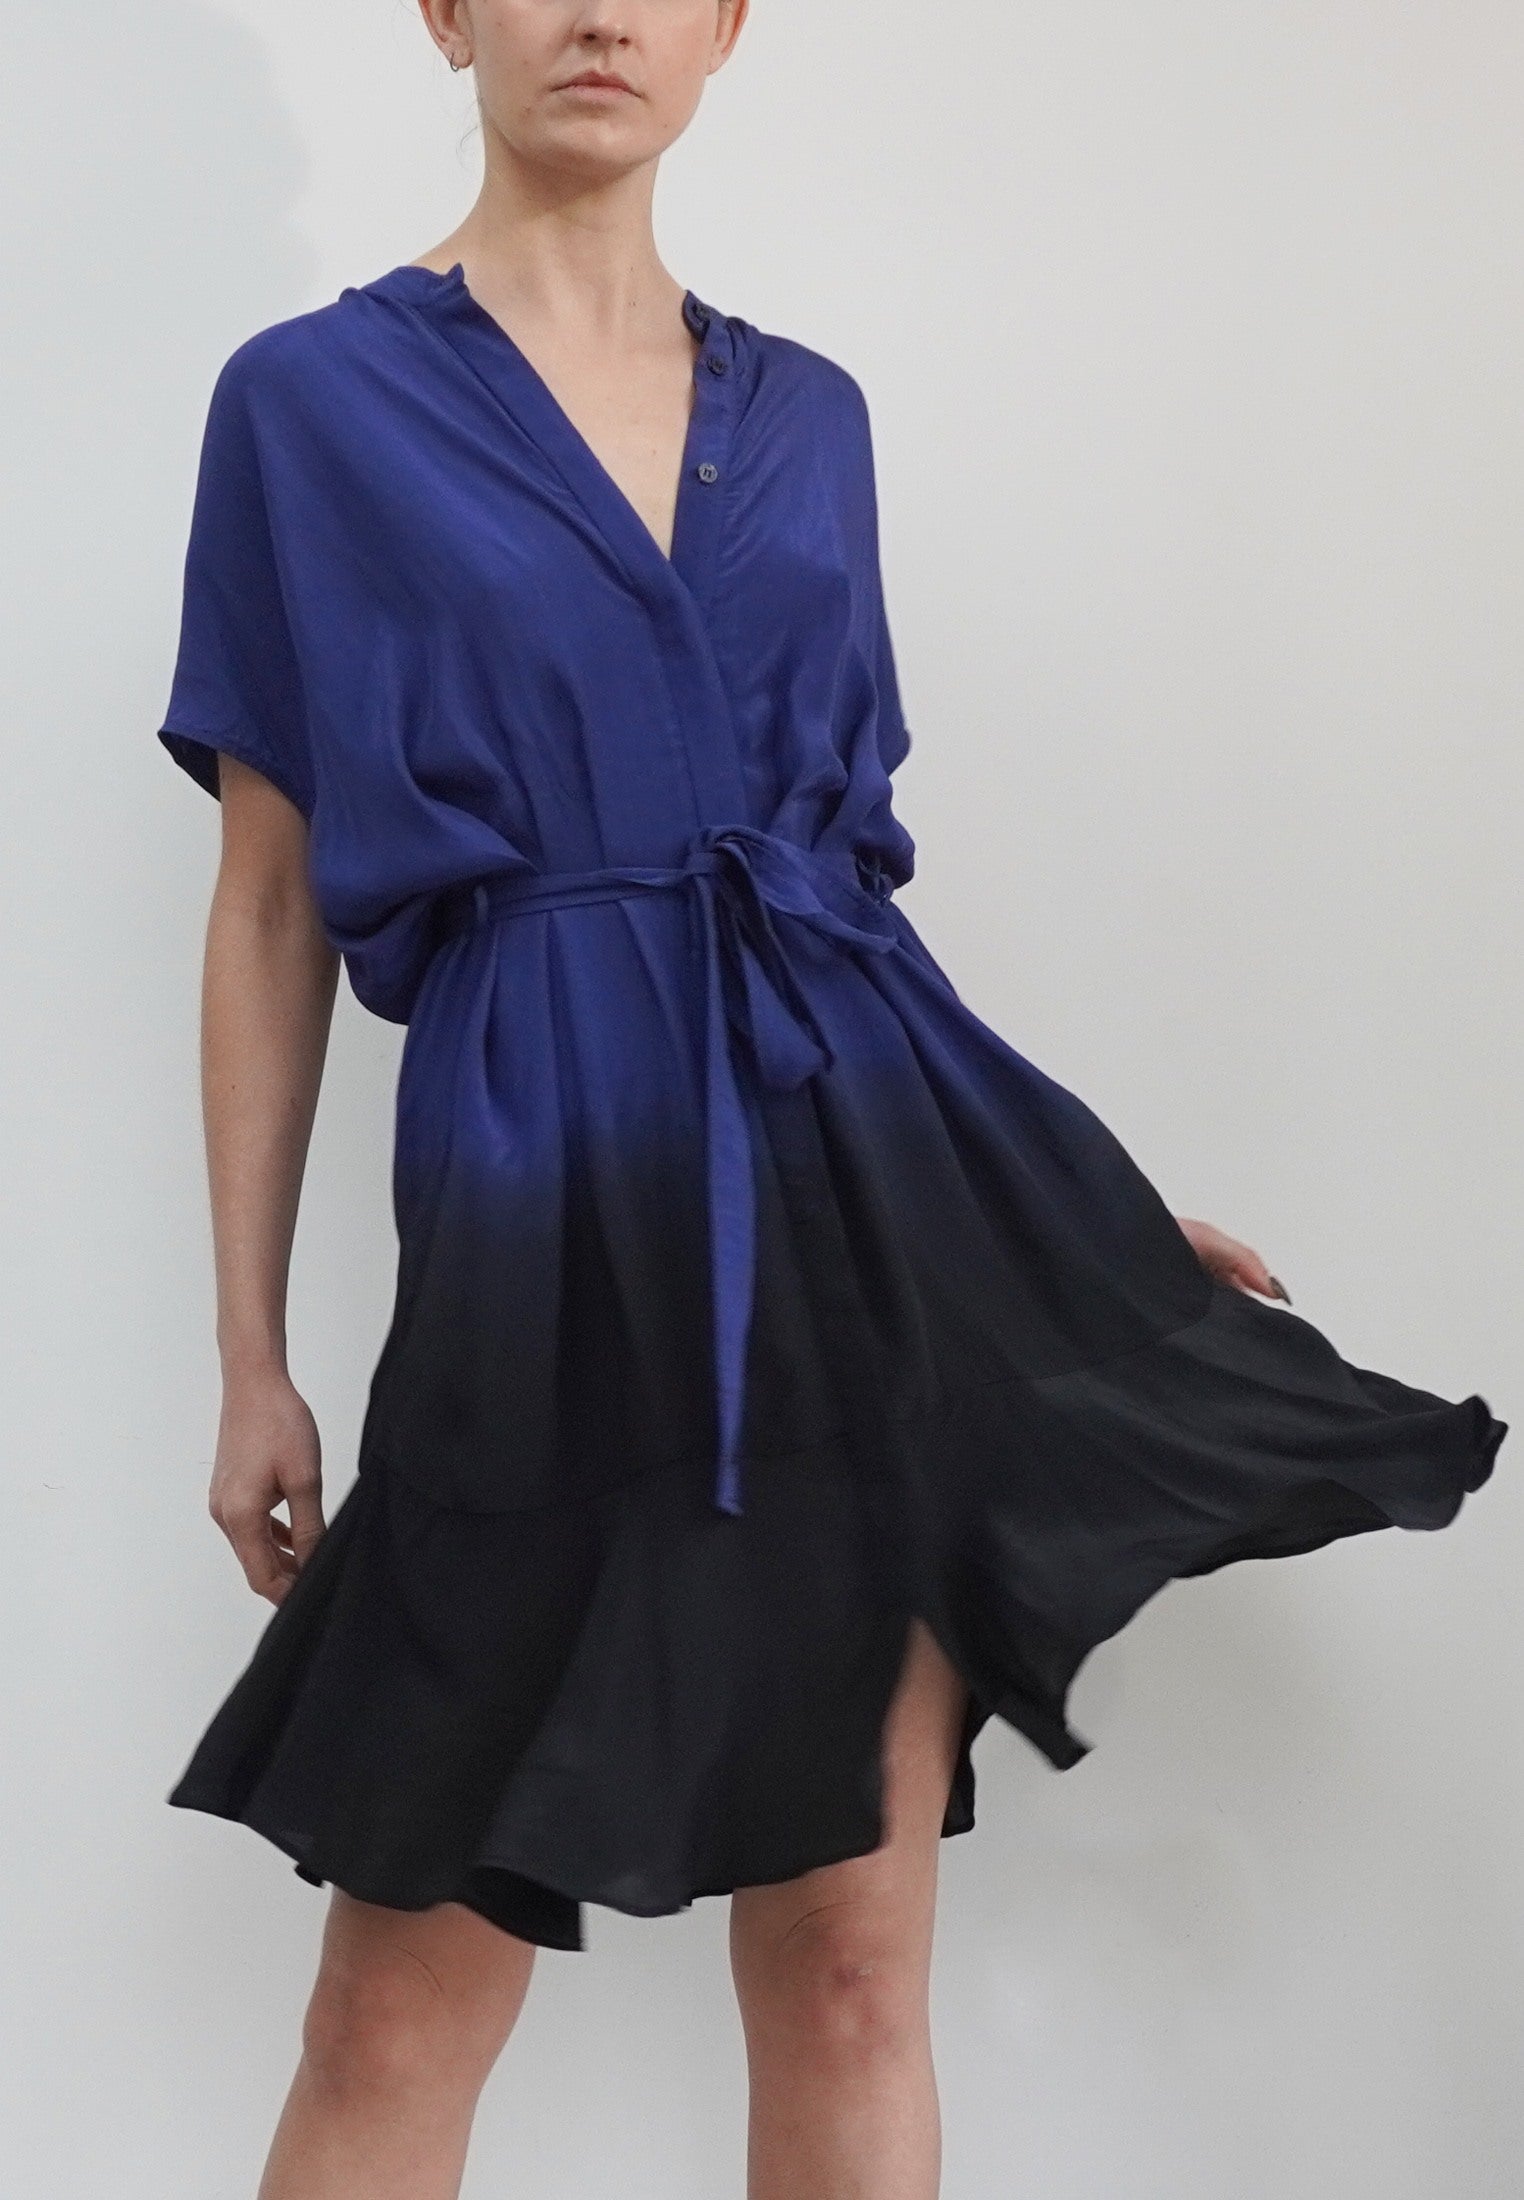 VALETTA DRESS BLUE & BLACK